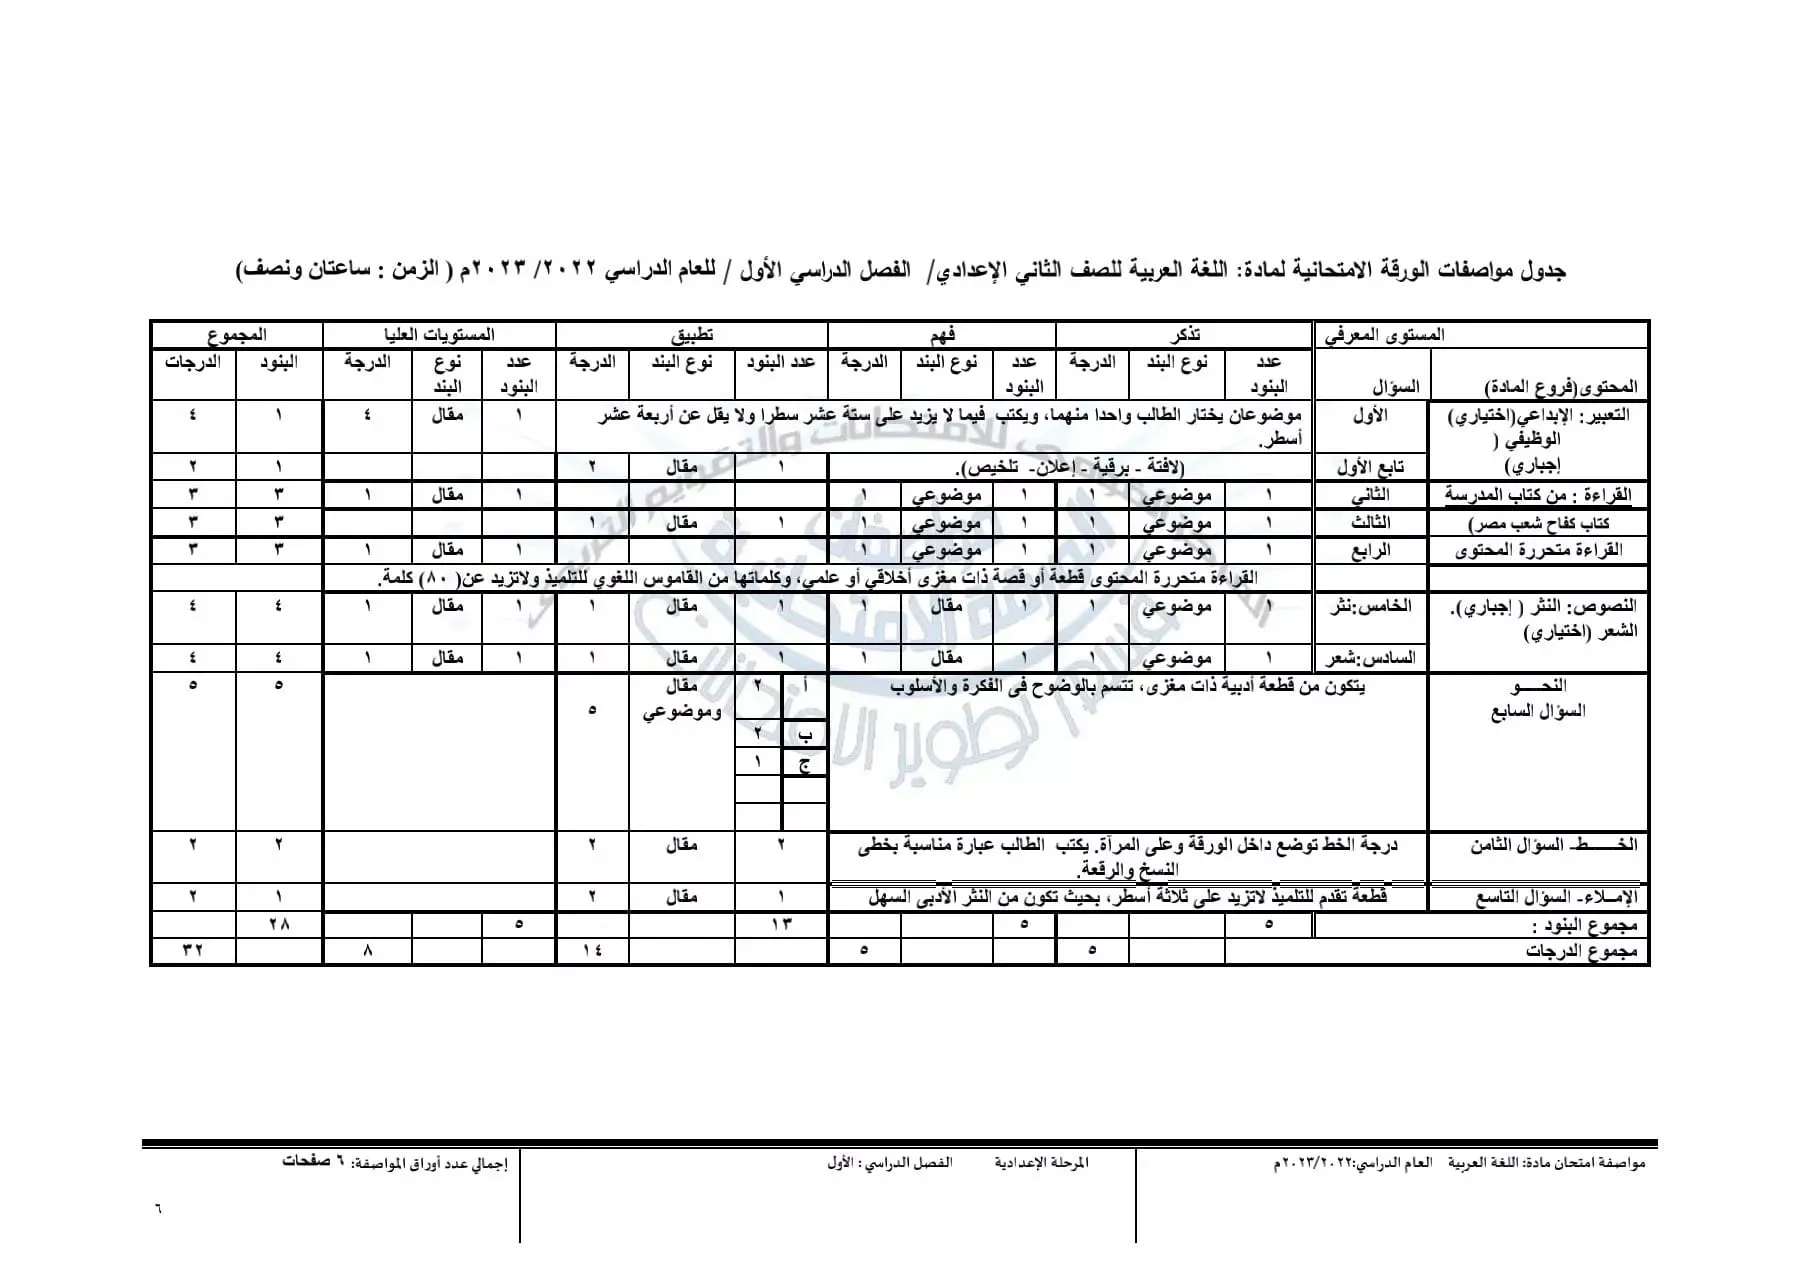 التعليم : تحدد مواصفات امتحان نصف العام لمادة اللغة العربية ..  بالمرحلة الإعدادية " مستند "